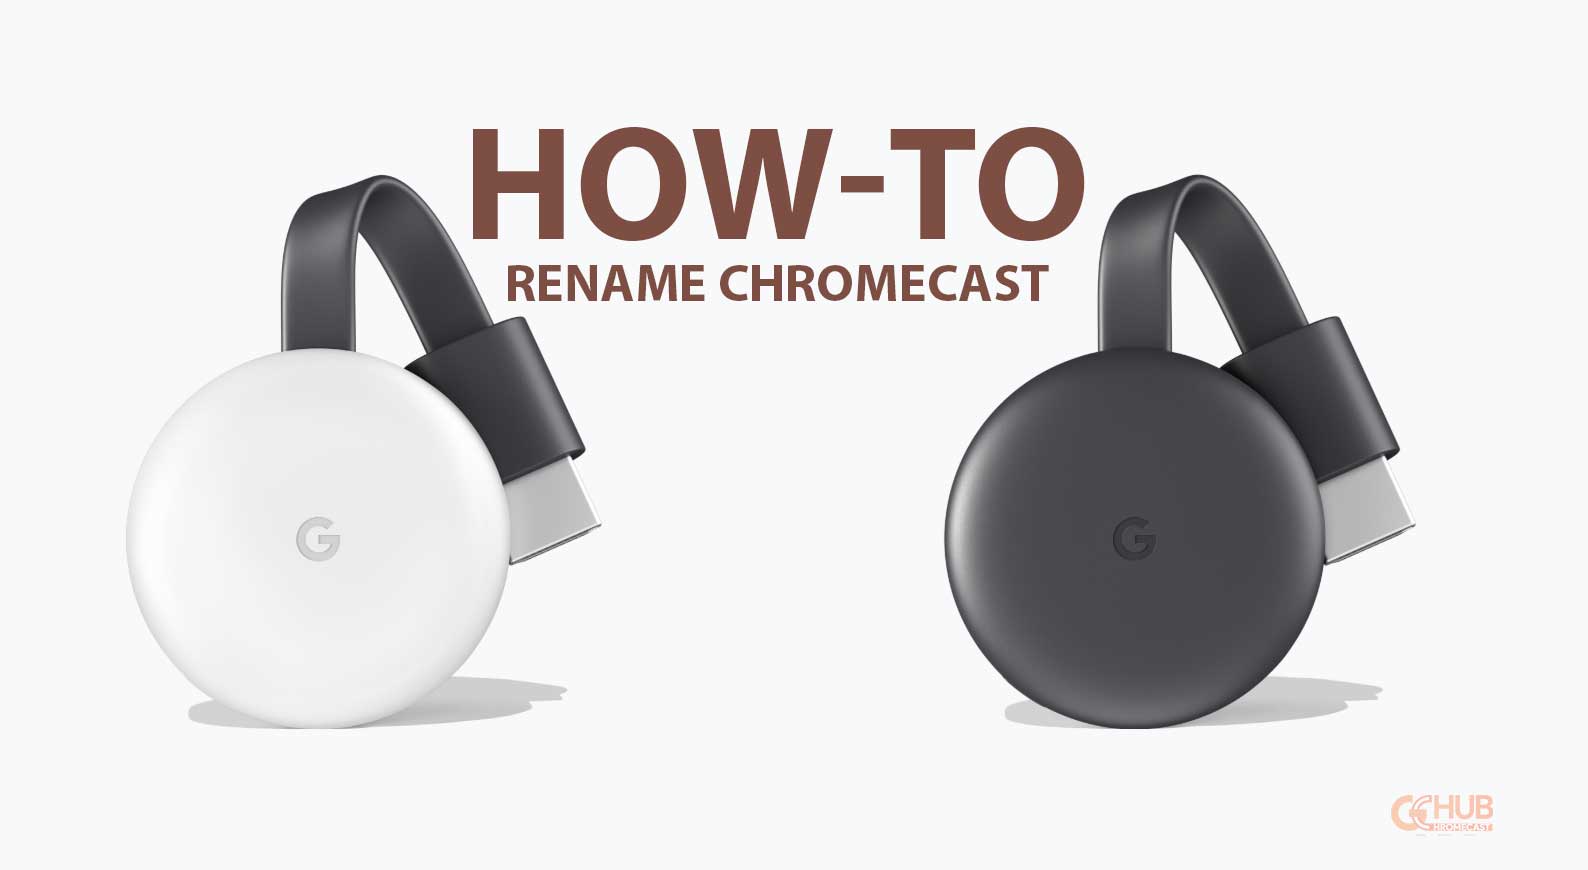 How to rename Google Chromecast - GChromecast